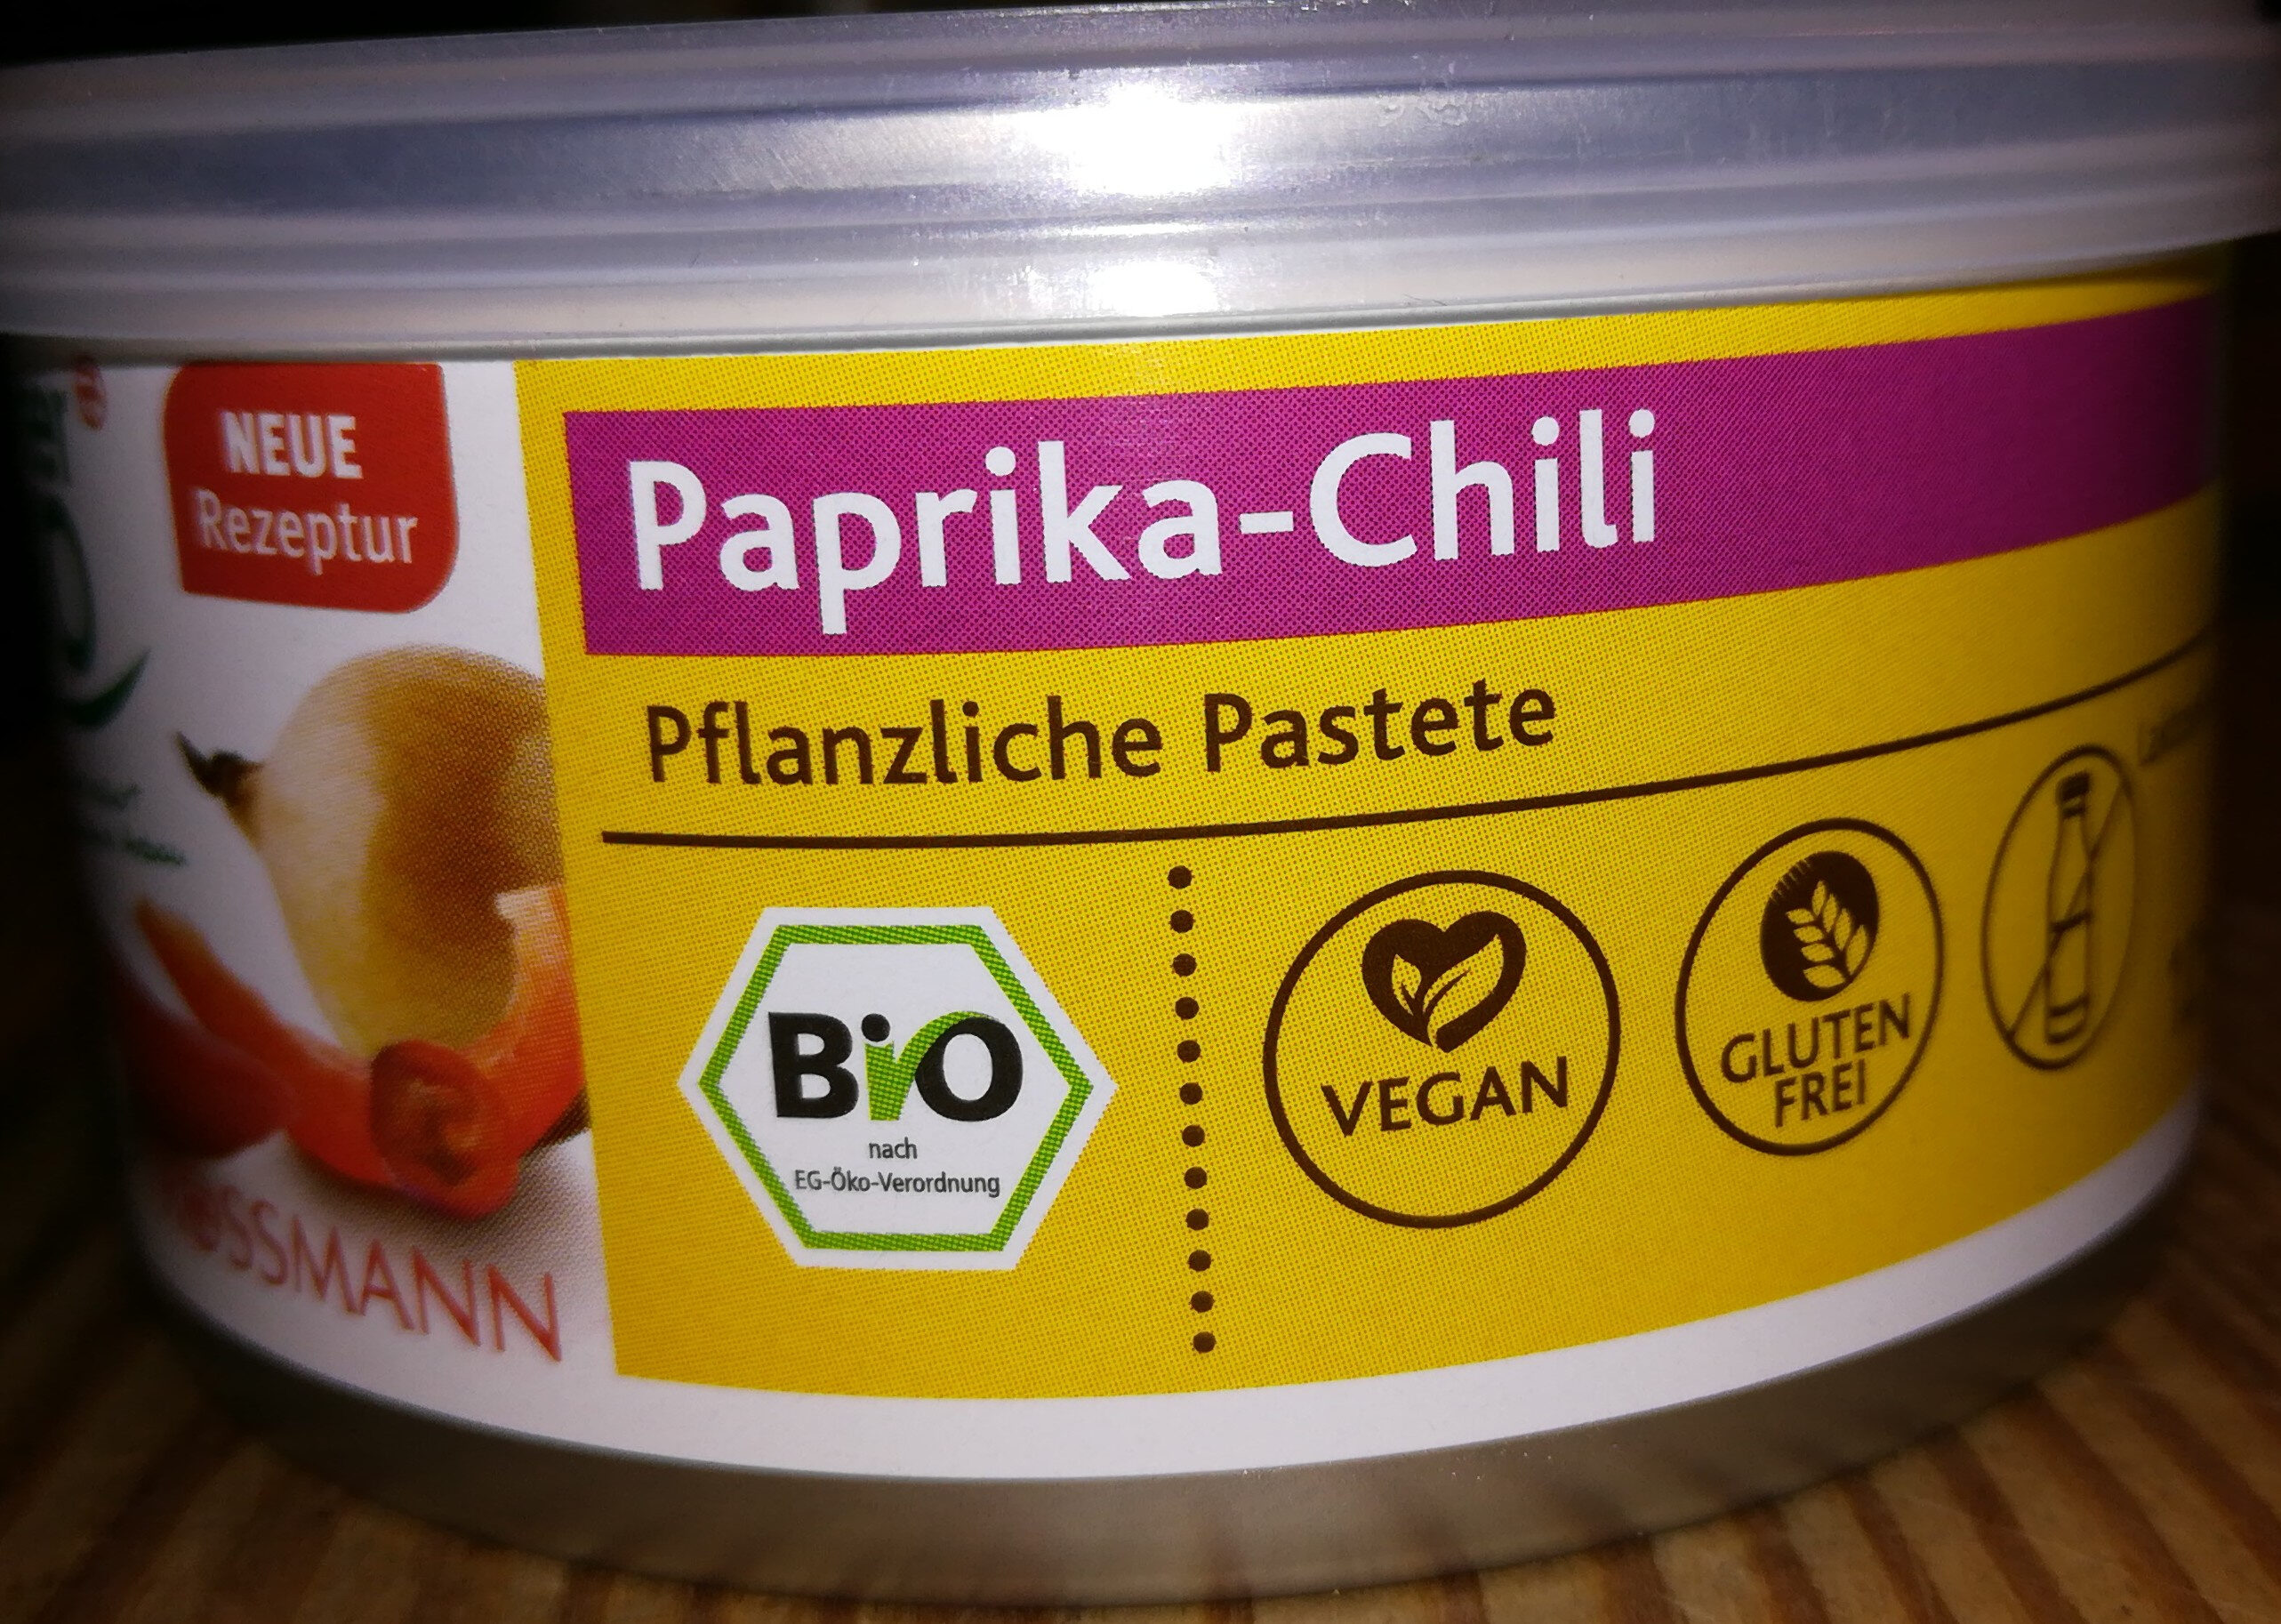 Paprika-Chili Pflanzliche Pastete - Product - de